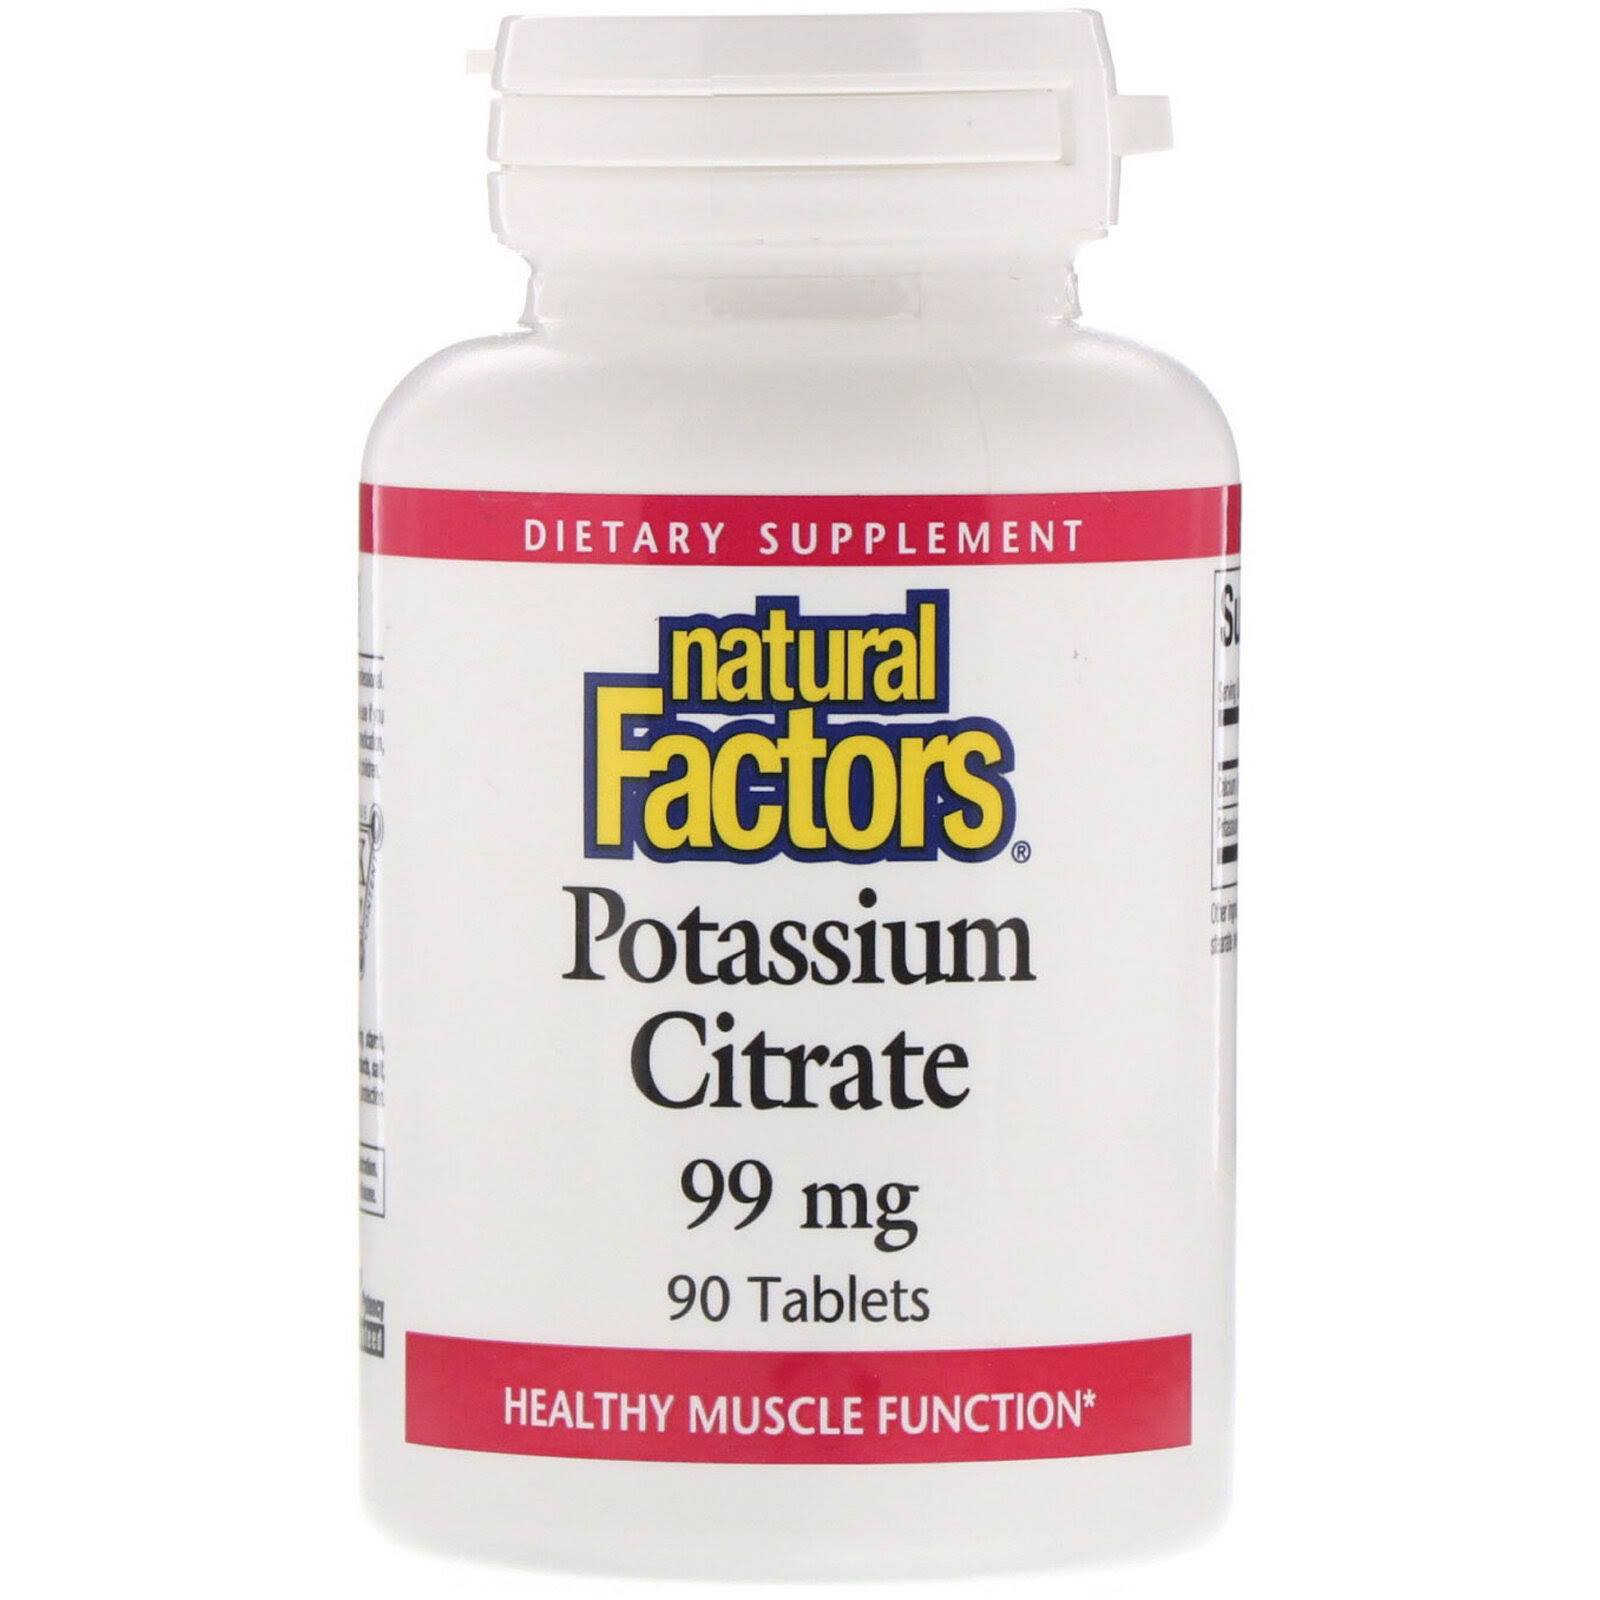 Natural Factors Potassium Citrate 99mg Tablets - x90